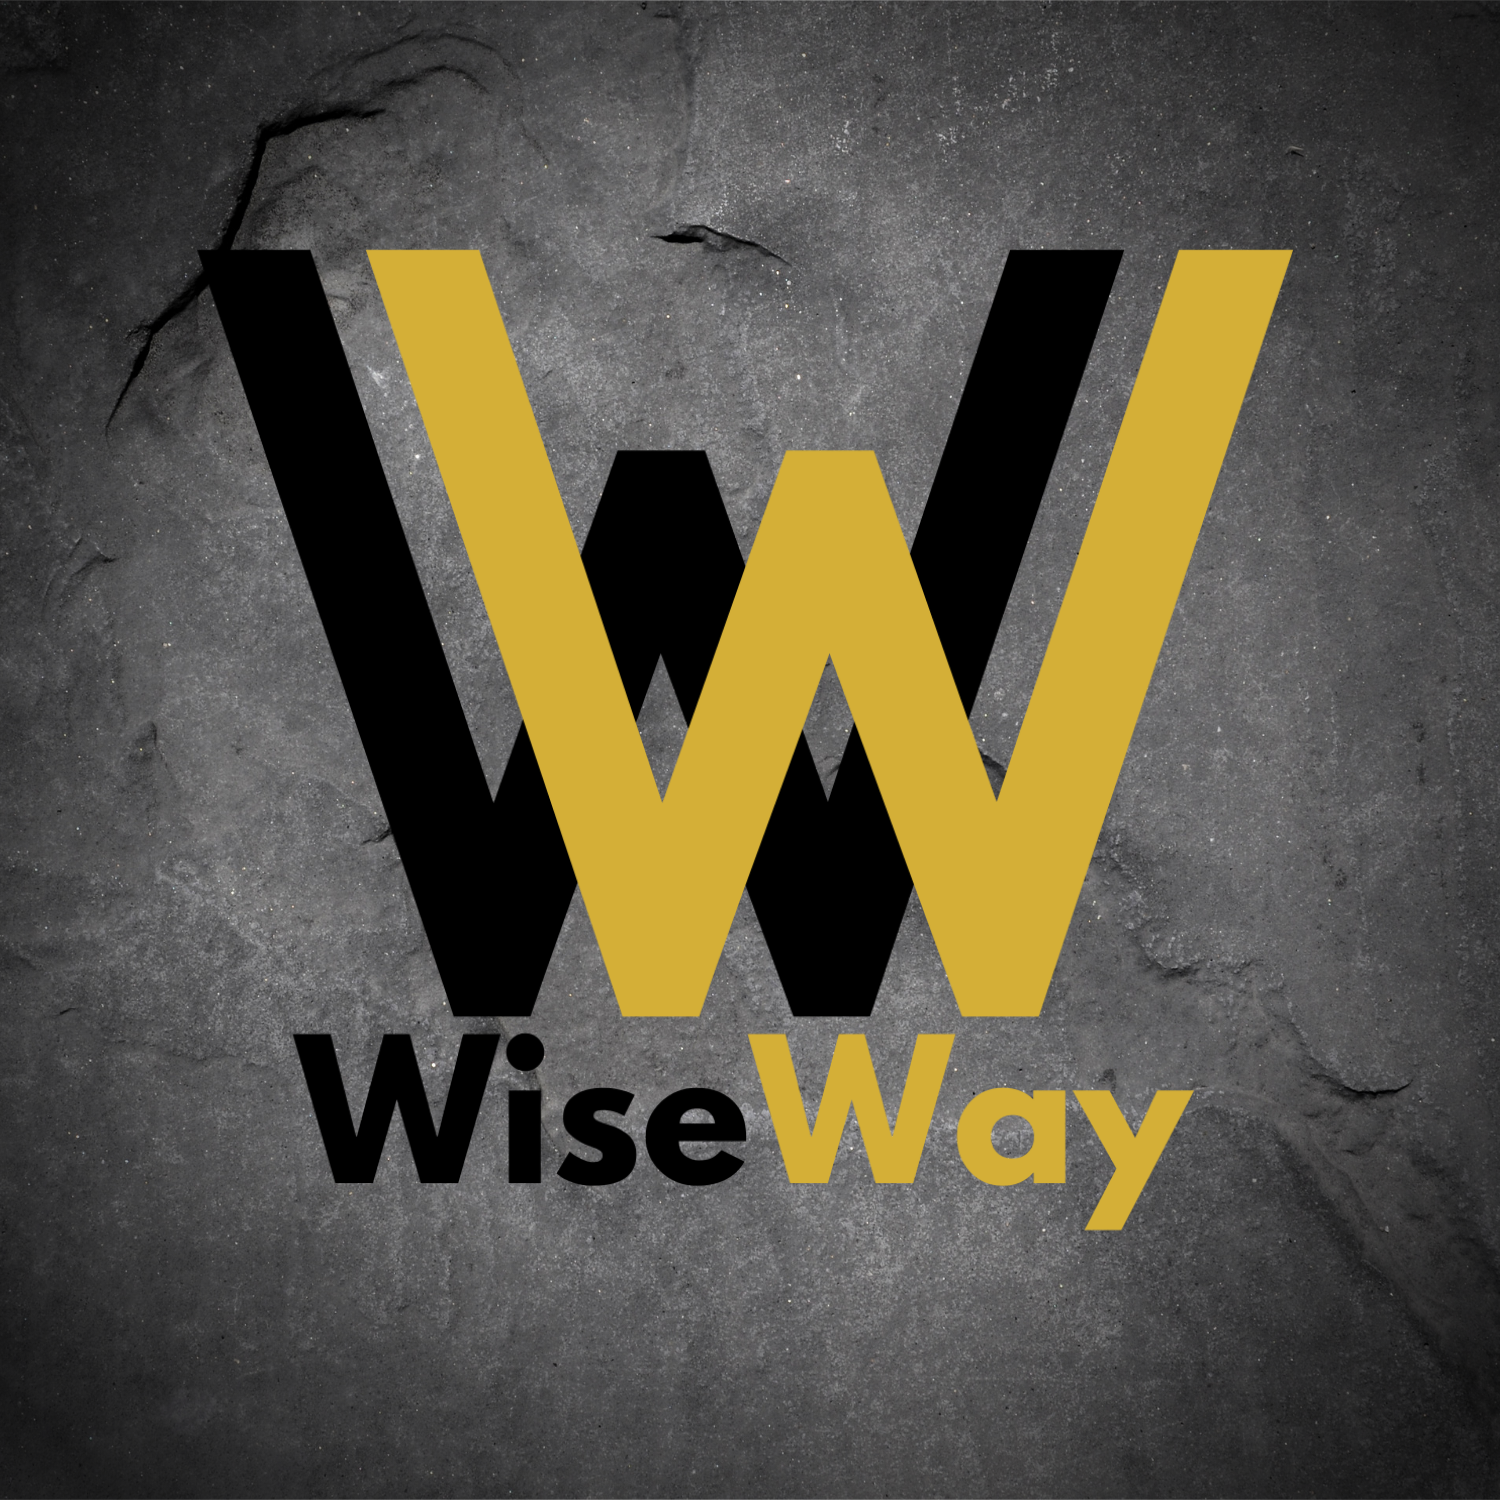 Way.nl – WiseWay